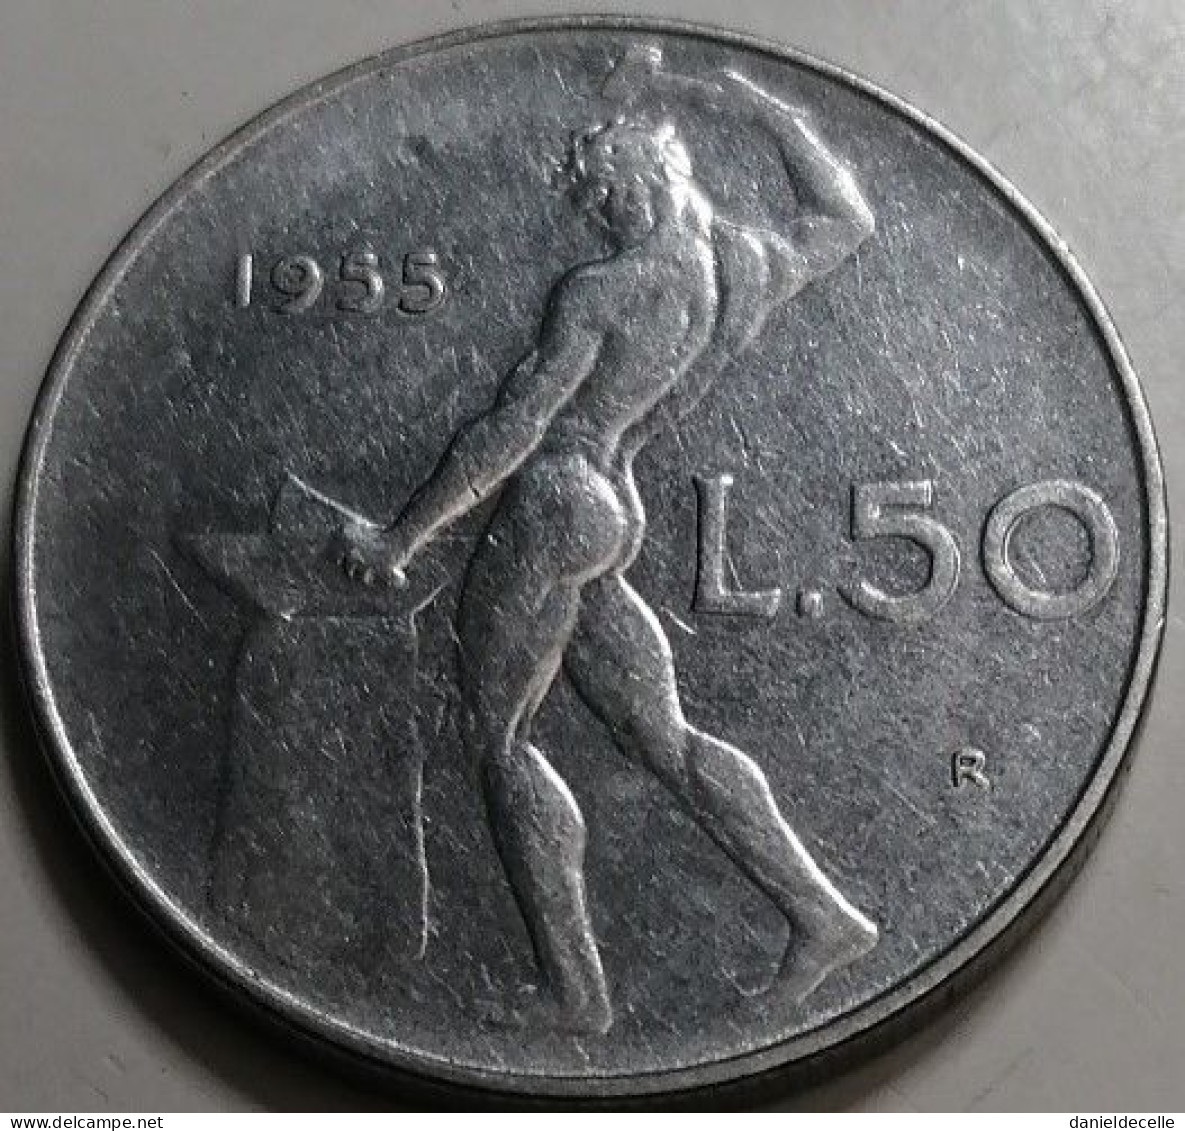 50 Lires Italie 1955 - 50 Lire